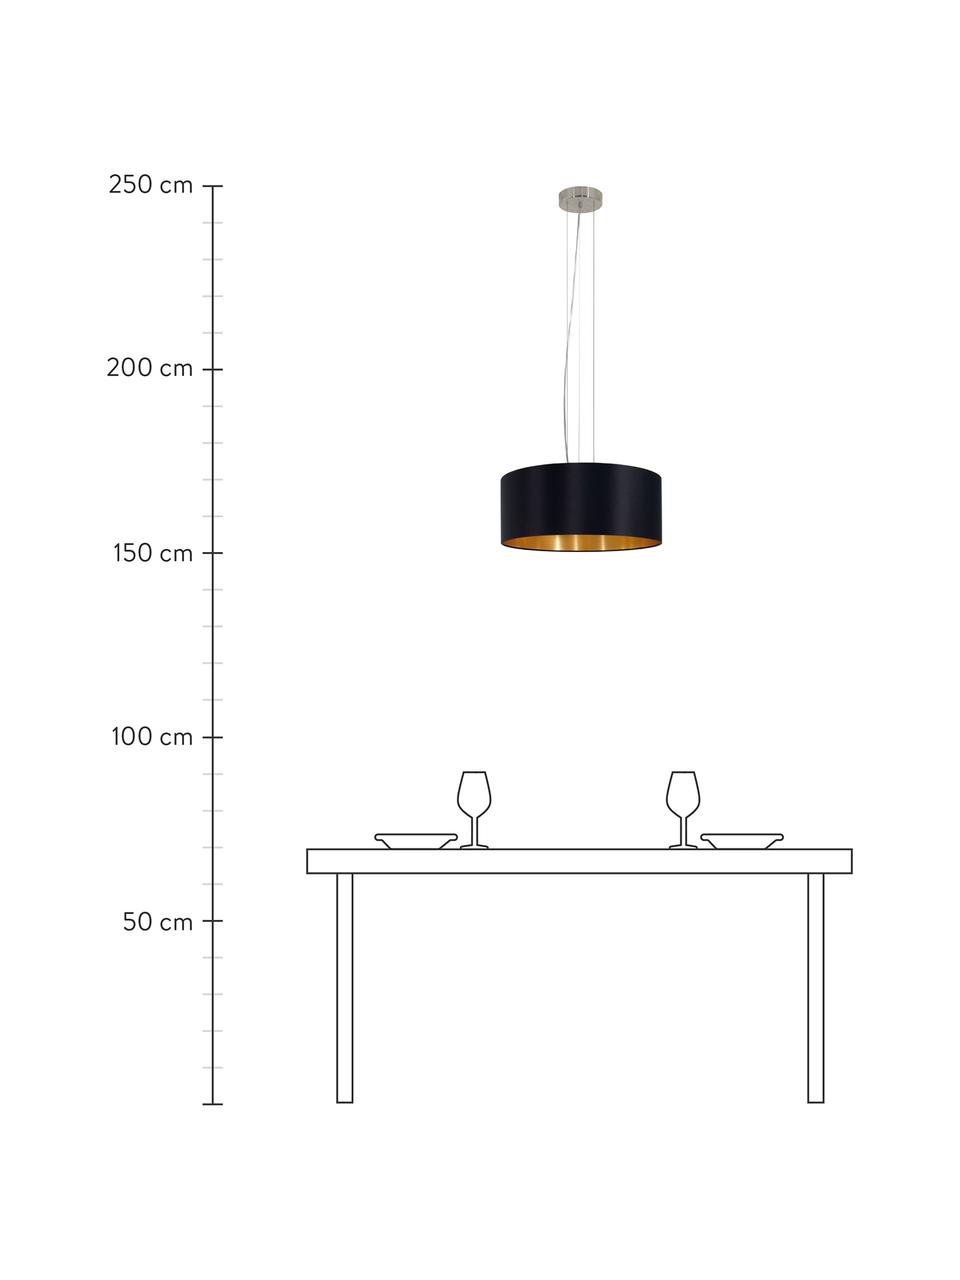 Lámpara de techo Jamie, Fijación: metal niquelado, Cable: plástico, Negro, dorado, Ø 53 x Al 24 cm